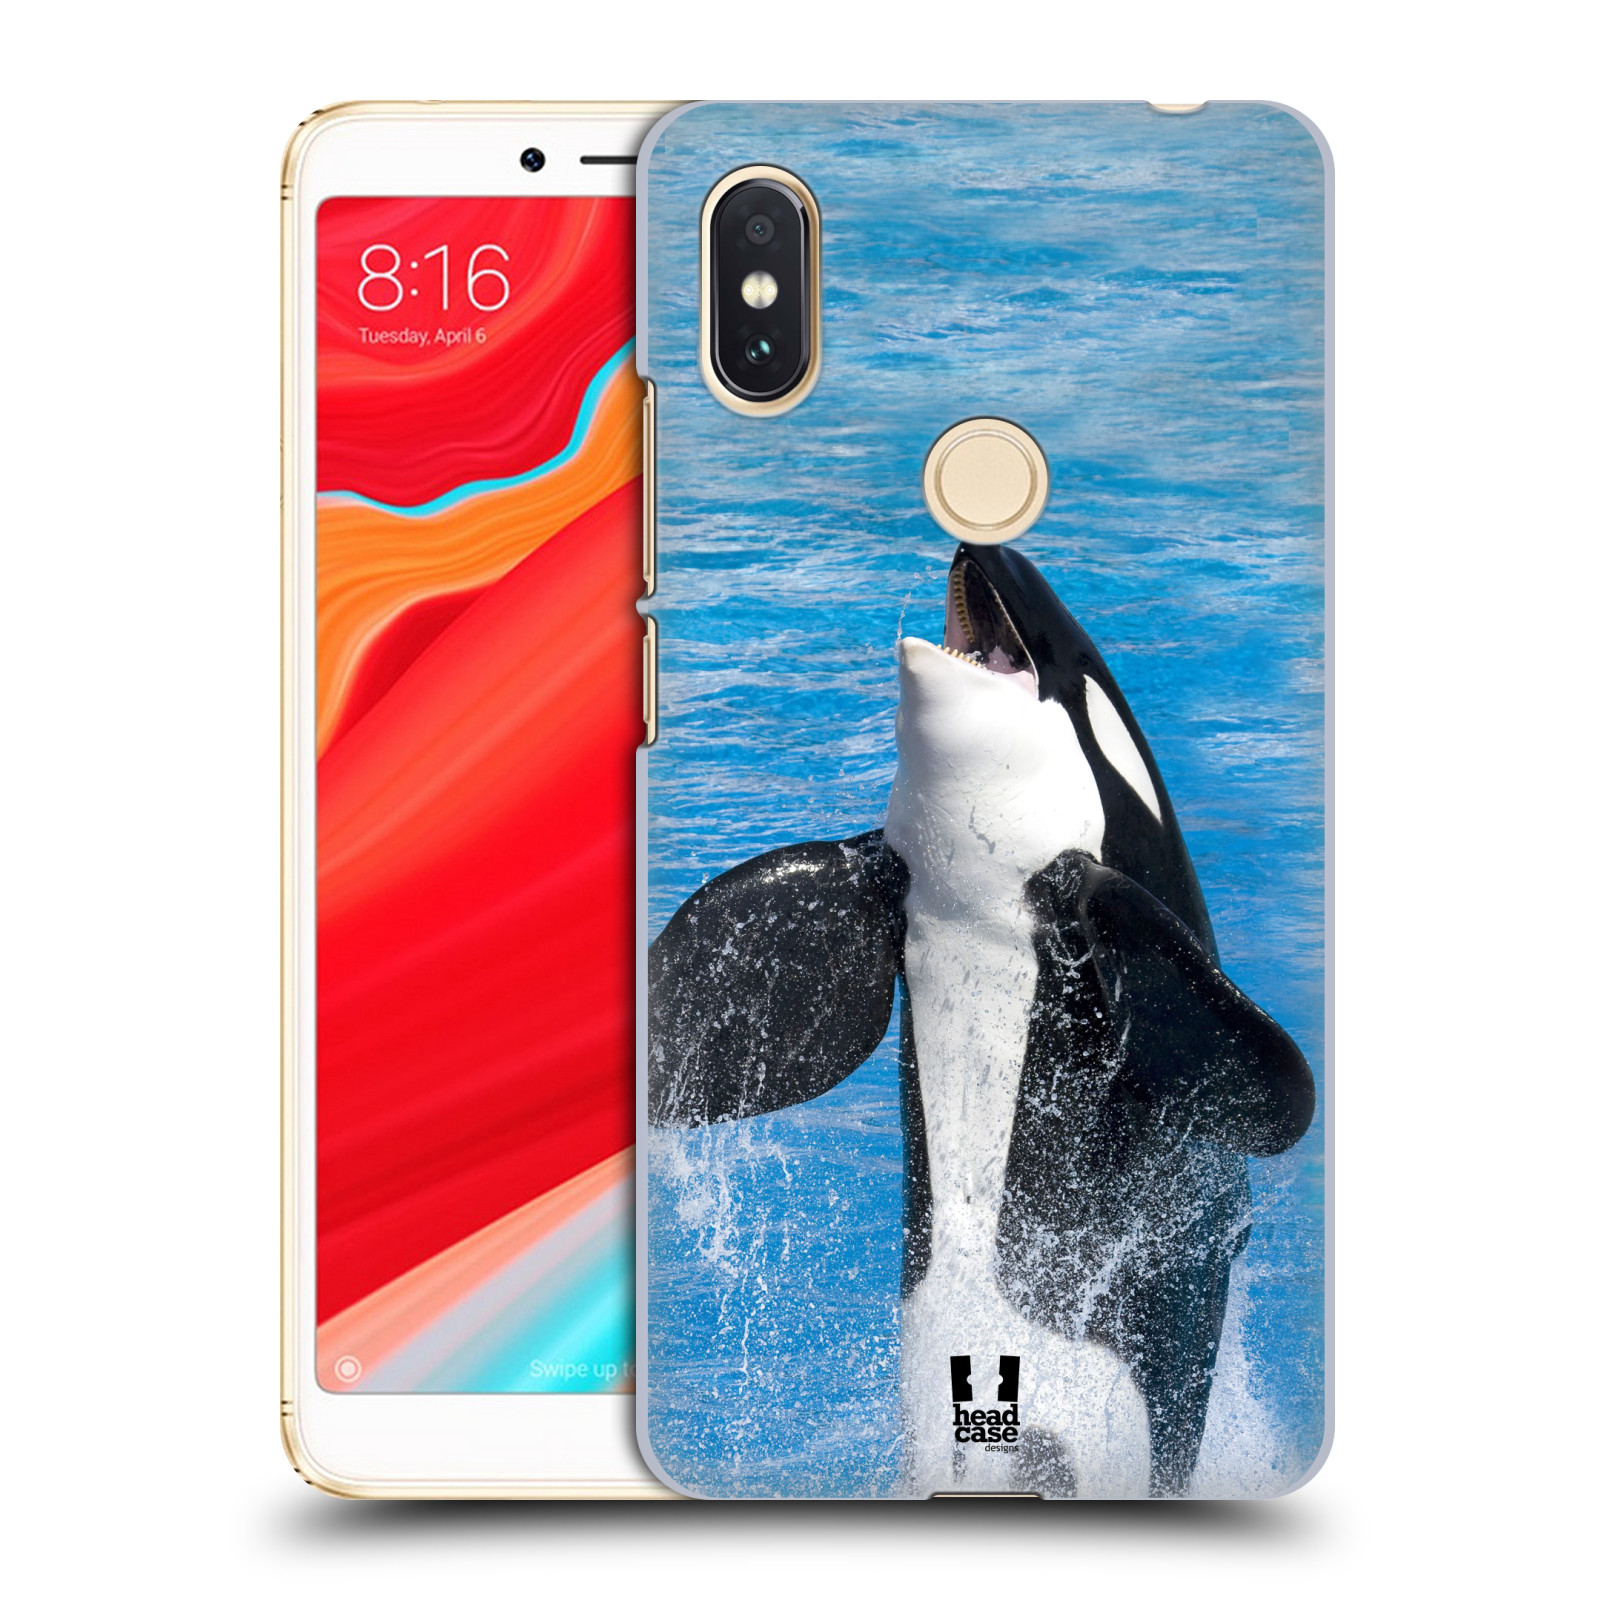 HEAD CASE plastový obal na mobil Xiaomi Redmi S2 vzor slavná zvířata foto velryba